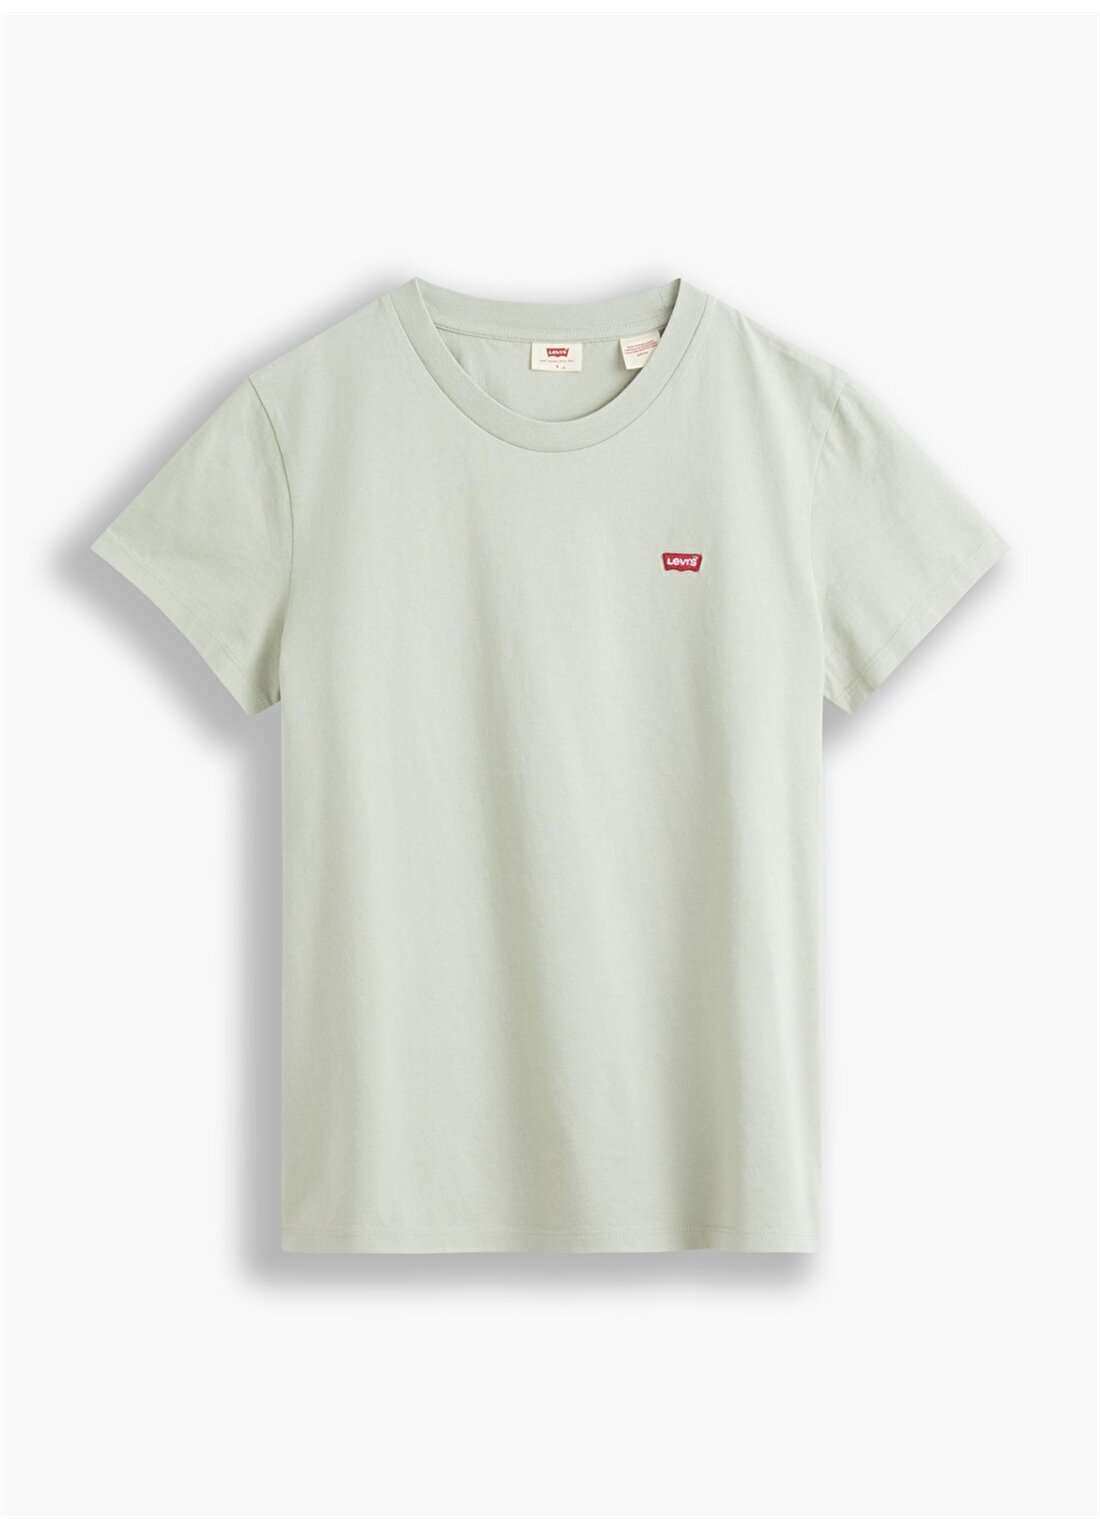 Levis T-Shirt